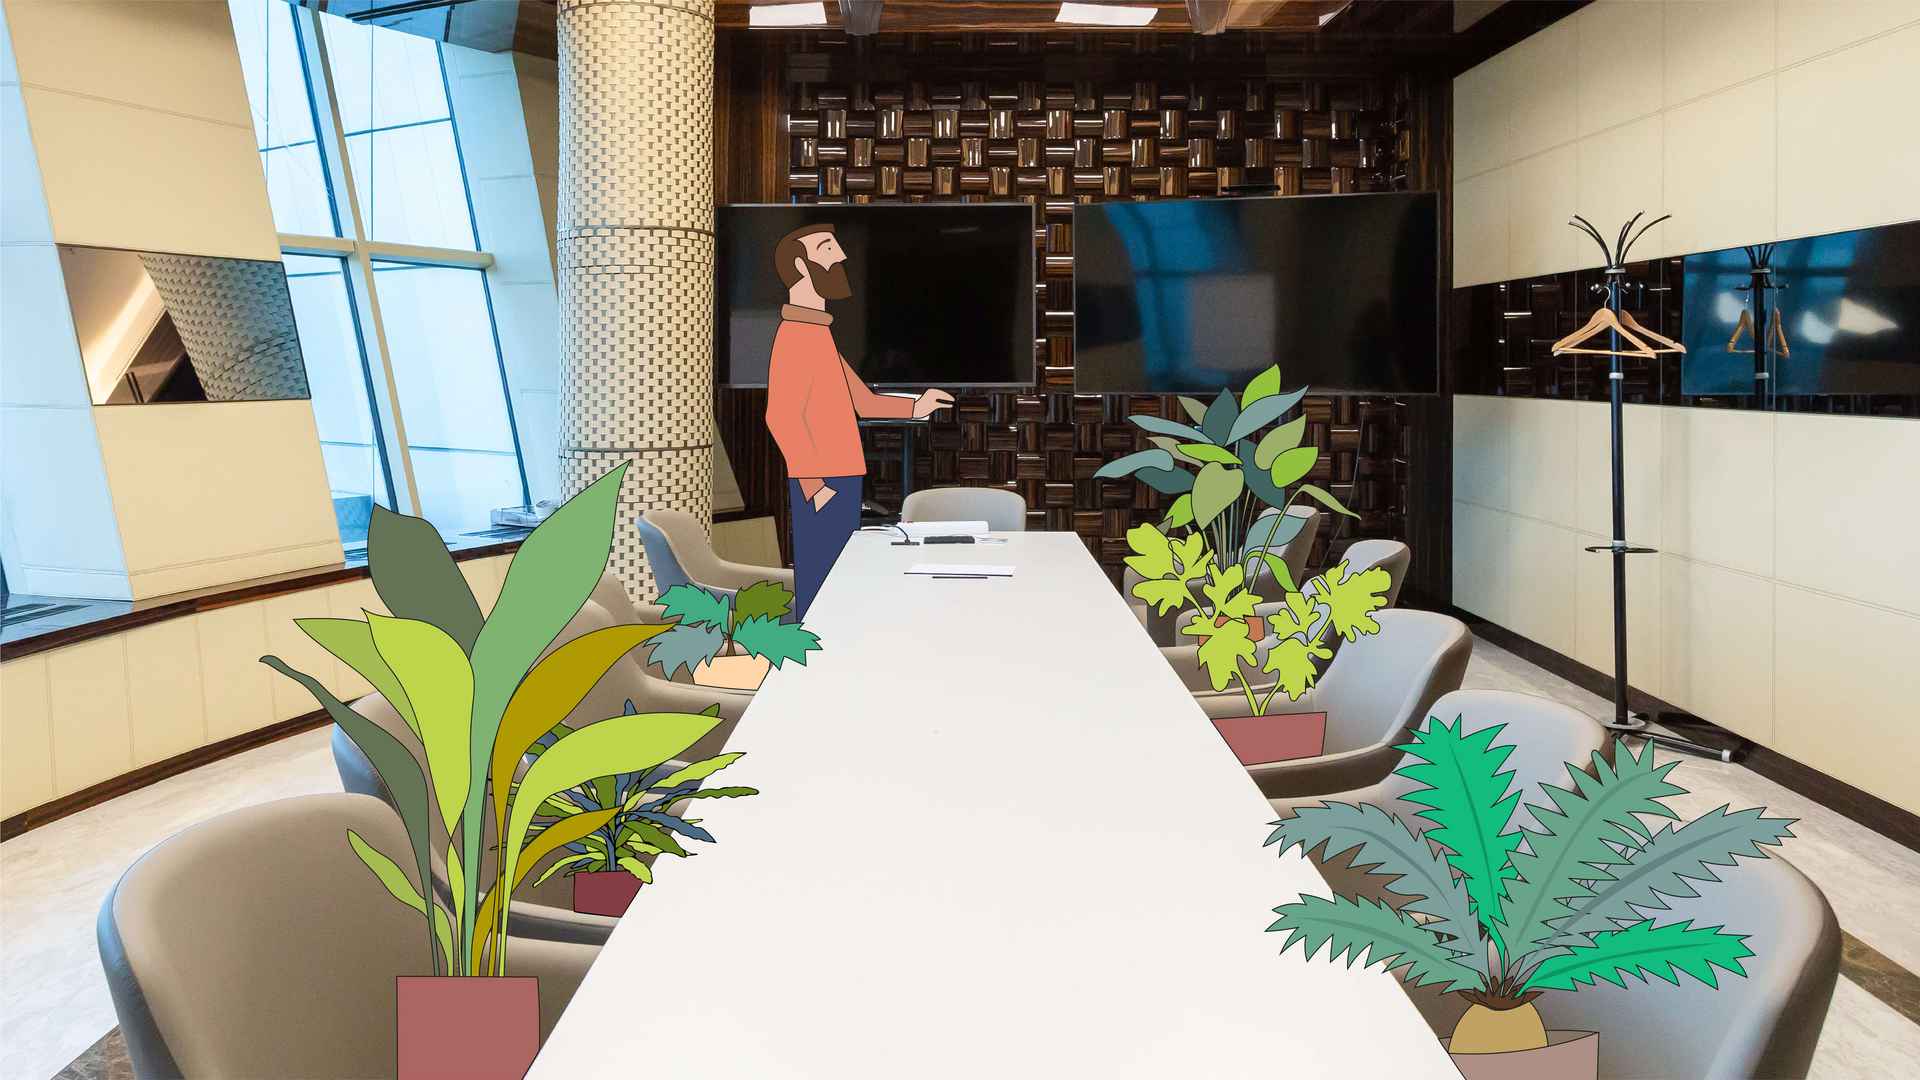 Ein Büro-Konferenzraum mit einem langen Tisch. Vorne steht ein Illustrierter Mann. Auf den Sitzen illustrierte Topfpflanzen, die stellvertretend für Frauen stehen.